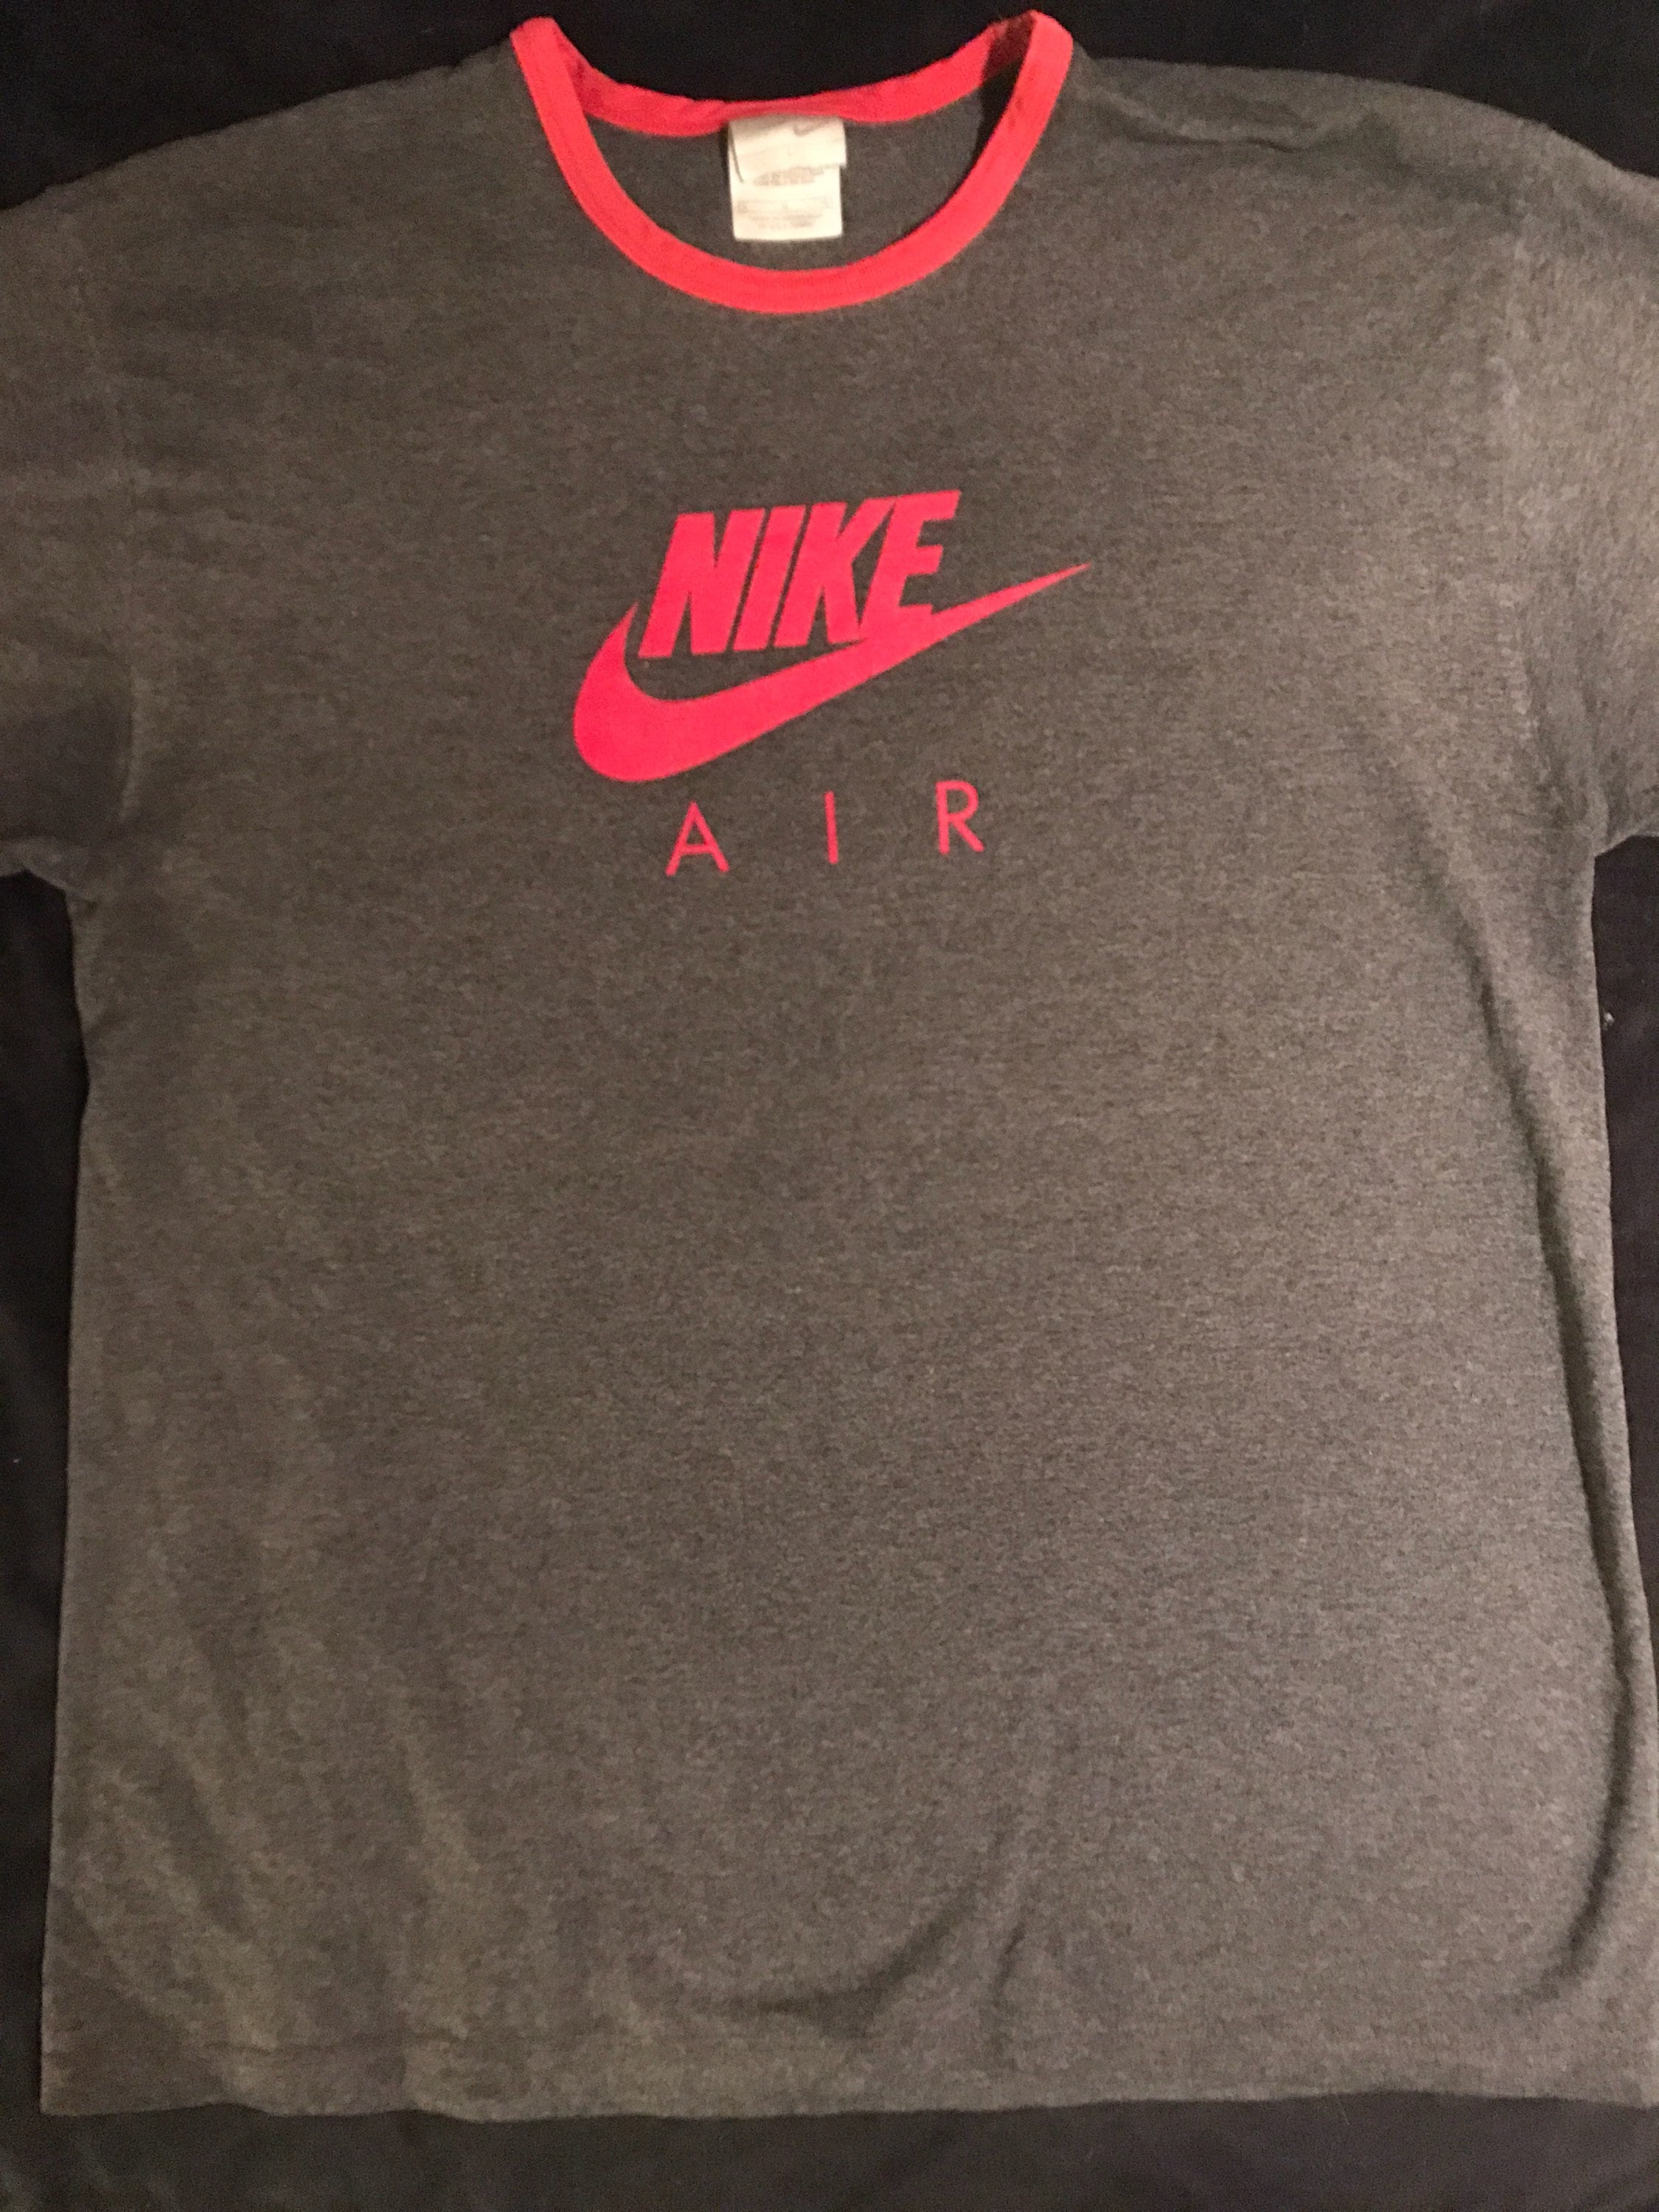 Vintage Nike Air T-shirt. Grey Nike Air Shirt. Vintage | Etsy